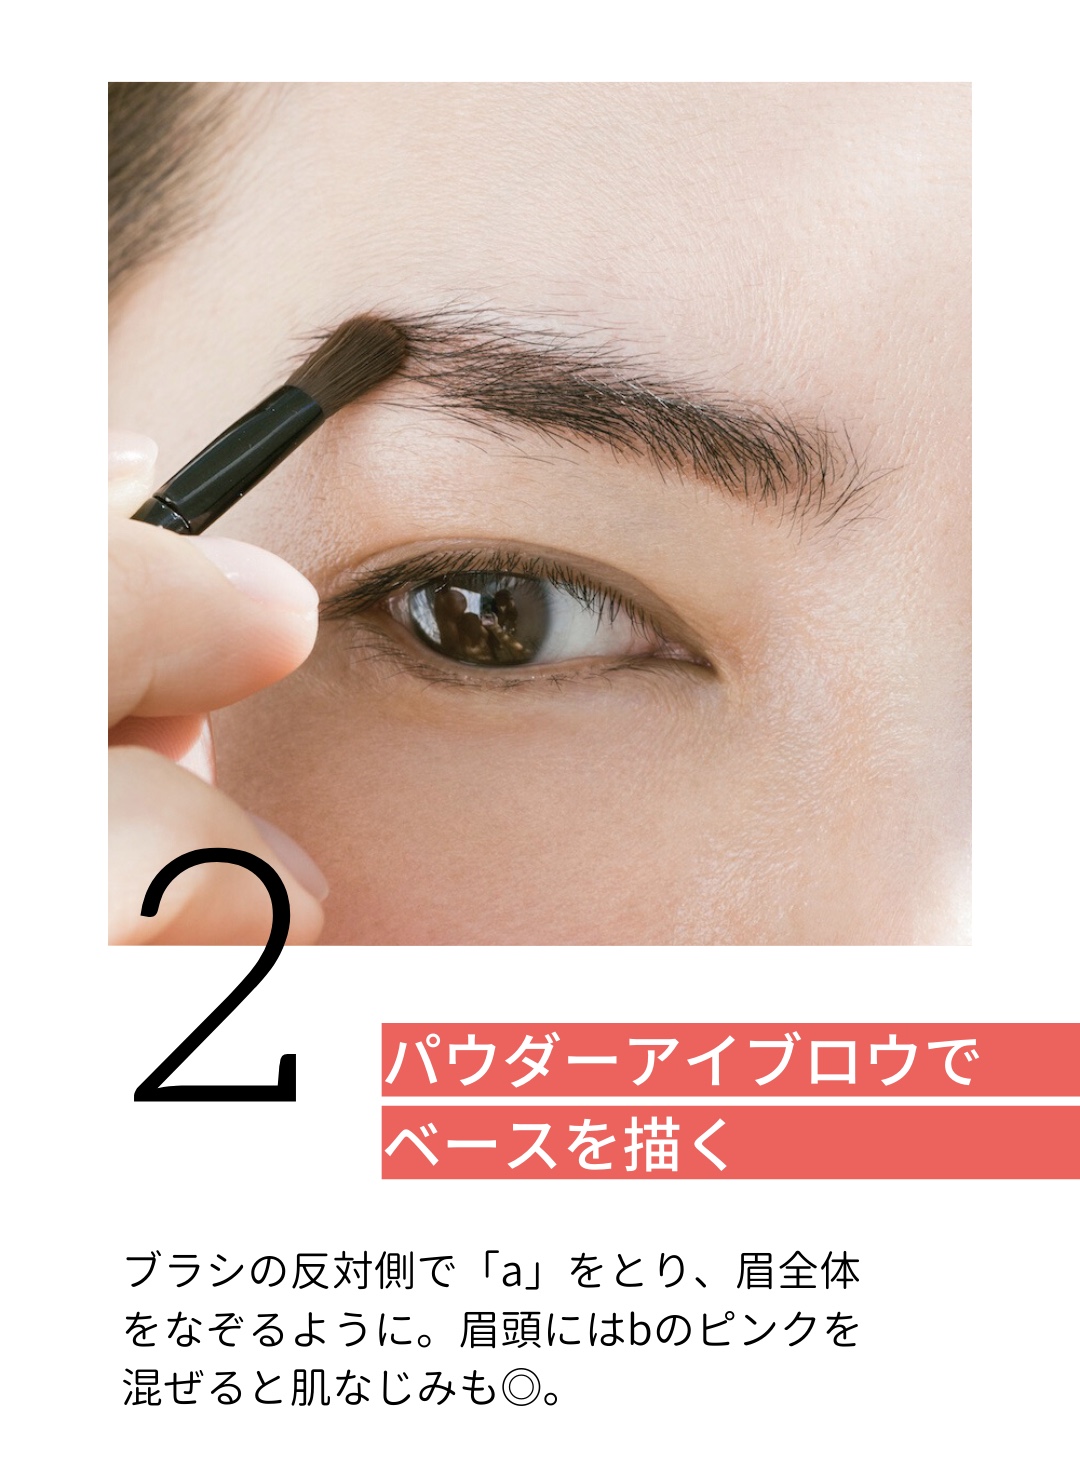 眉毛の描き方プロセス。